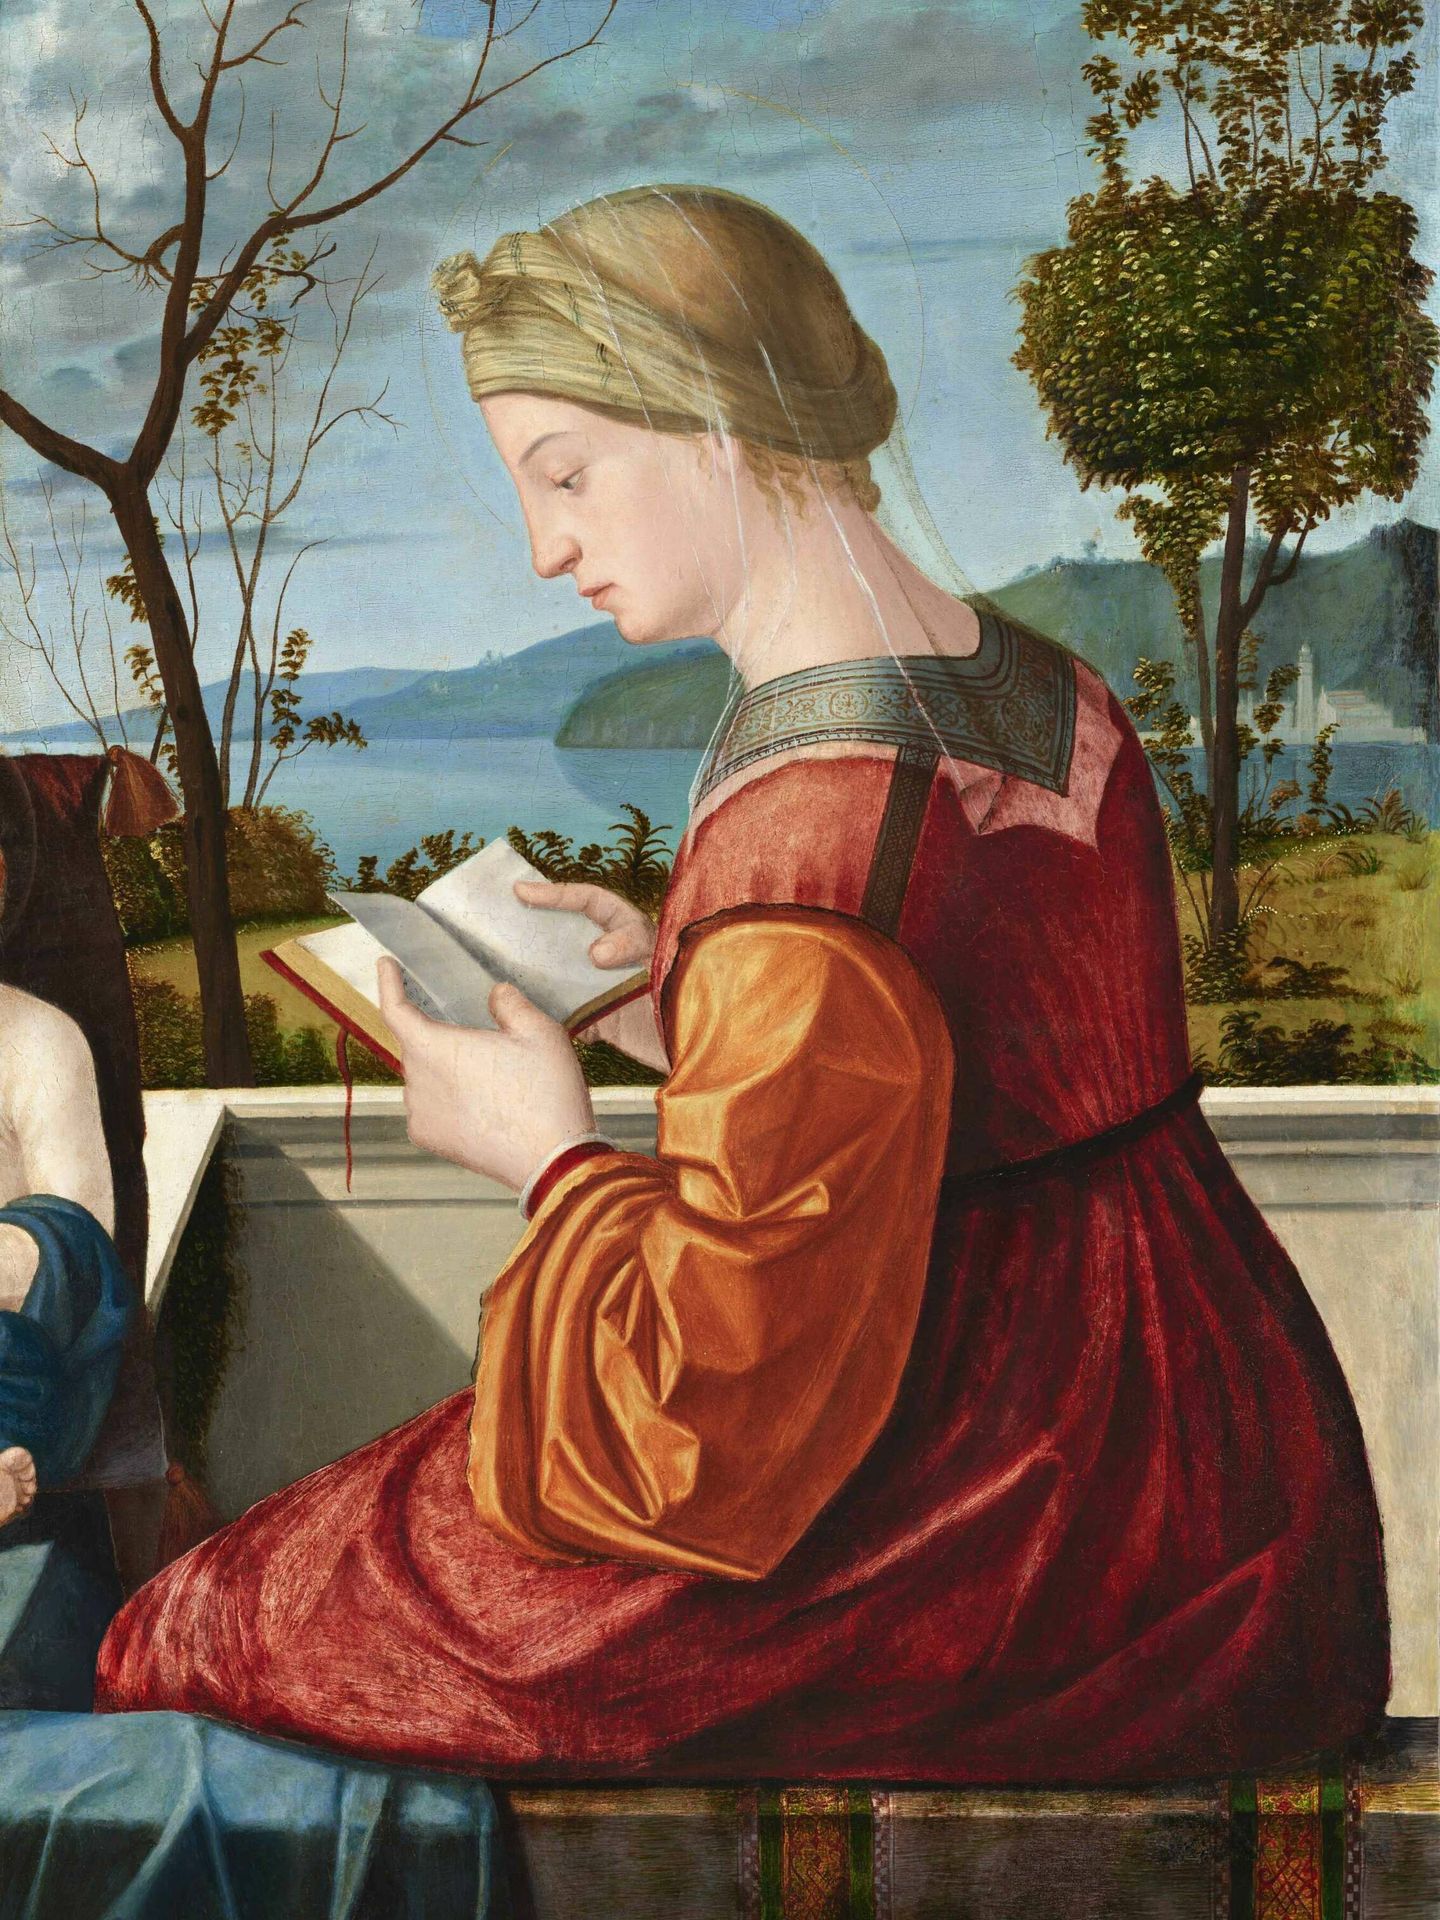 'La Virgen María leyendo', cuadro pintado por Carpaccio en torno a 1510.